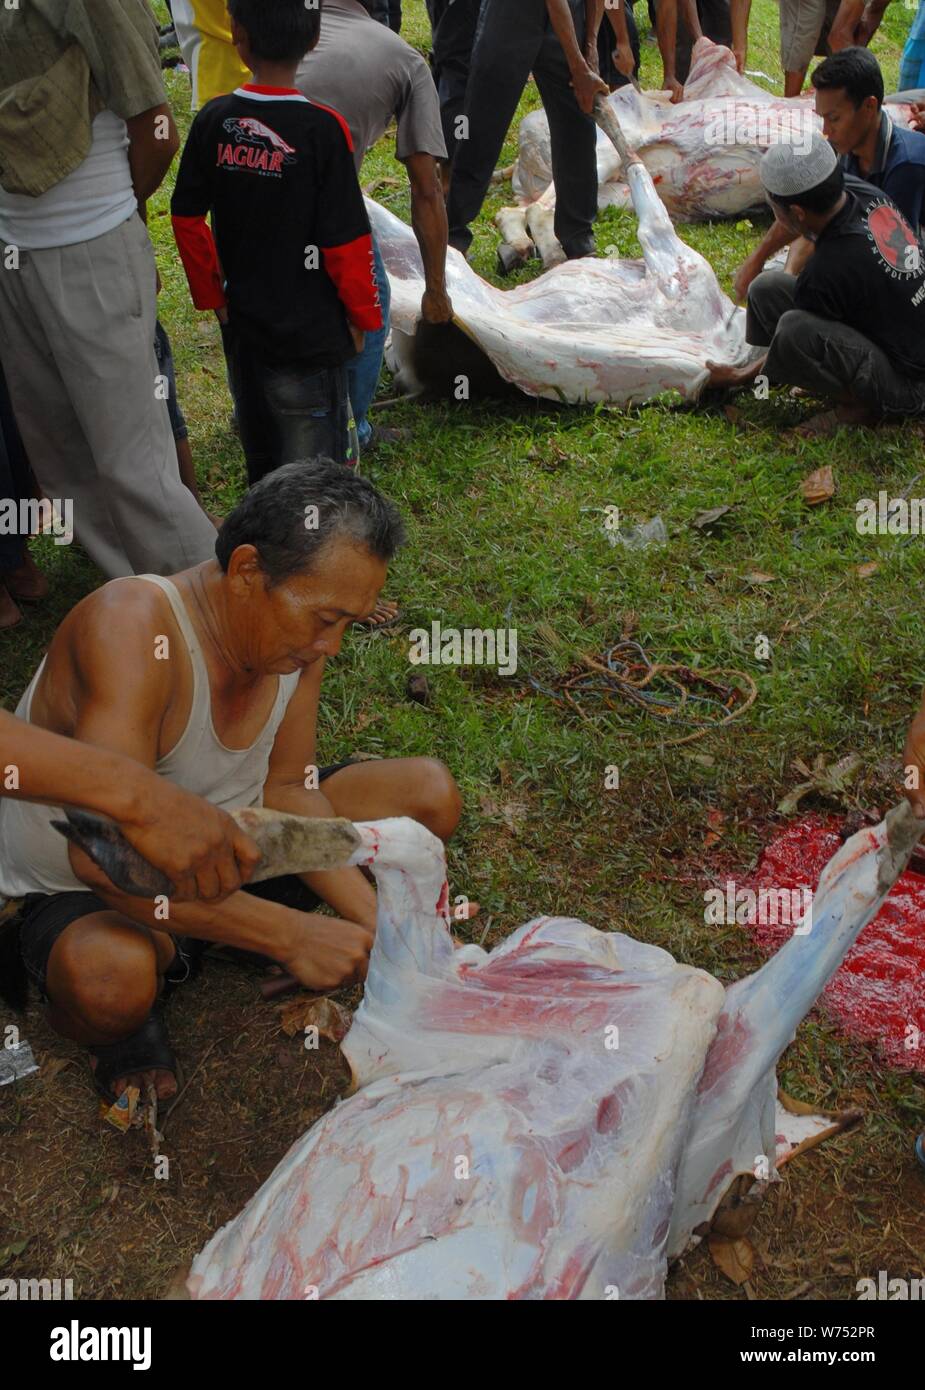 Bogor, West Java, Indonesia - Agosto 2019 : Alcuni lavoratori volontari tagliare e tritare l'agnello sacrificale carne in un paese sottosviluppato. Foto Stock